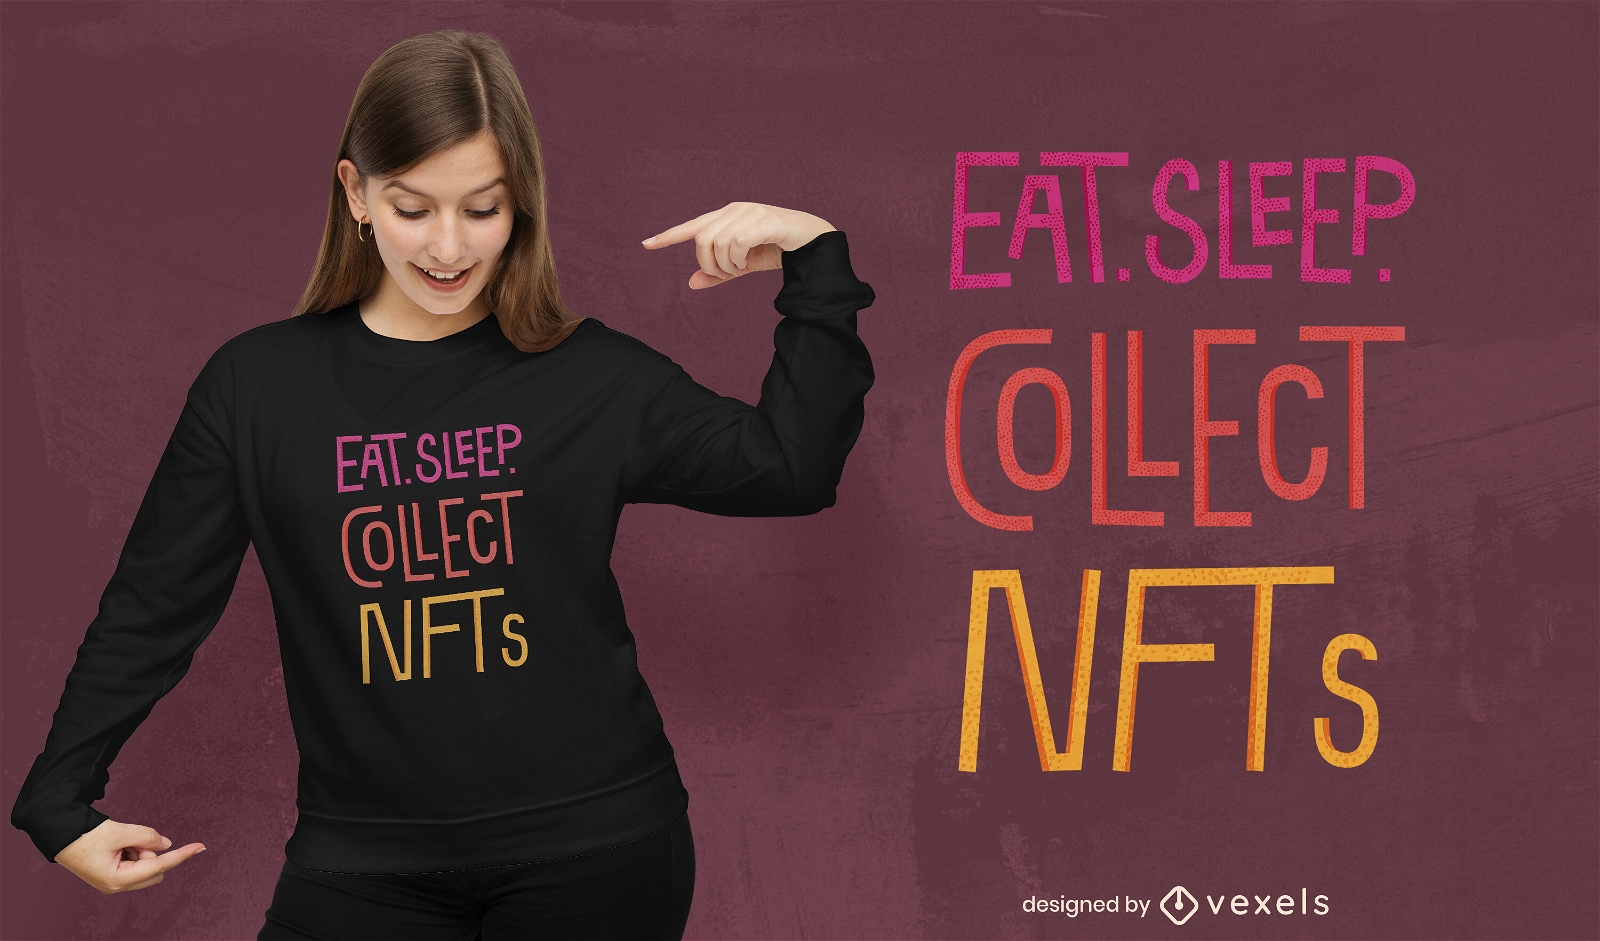 Comer, dormir e colecionar designs de camisetas NFT